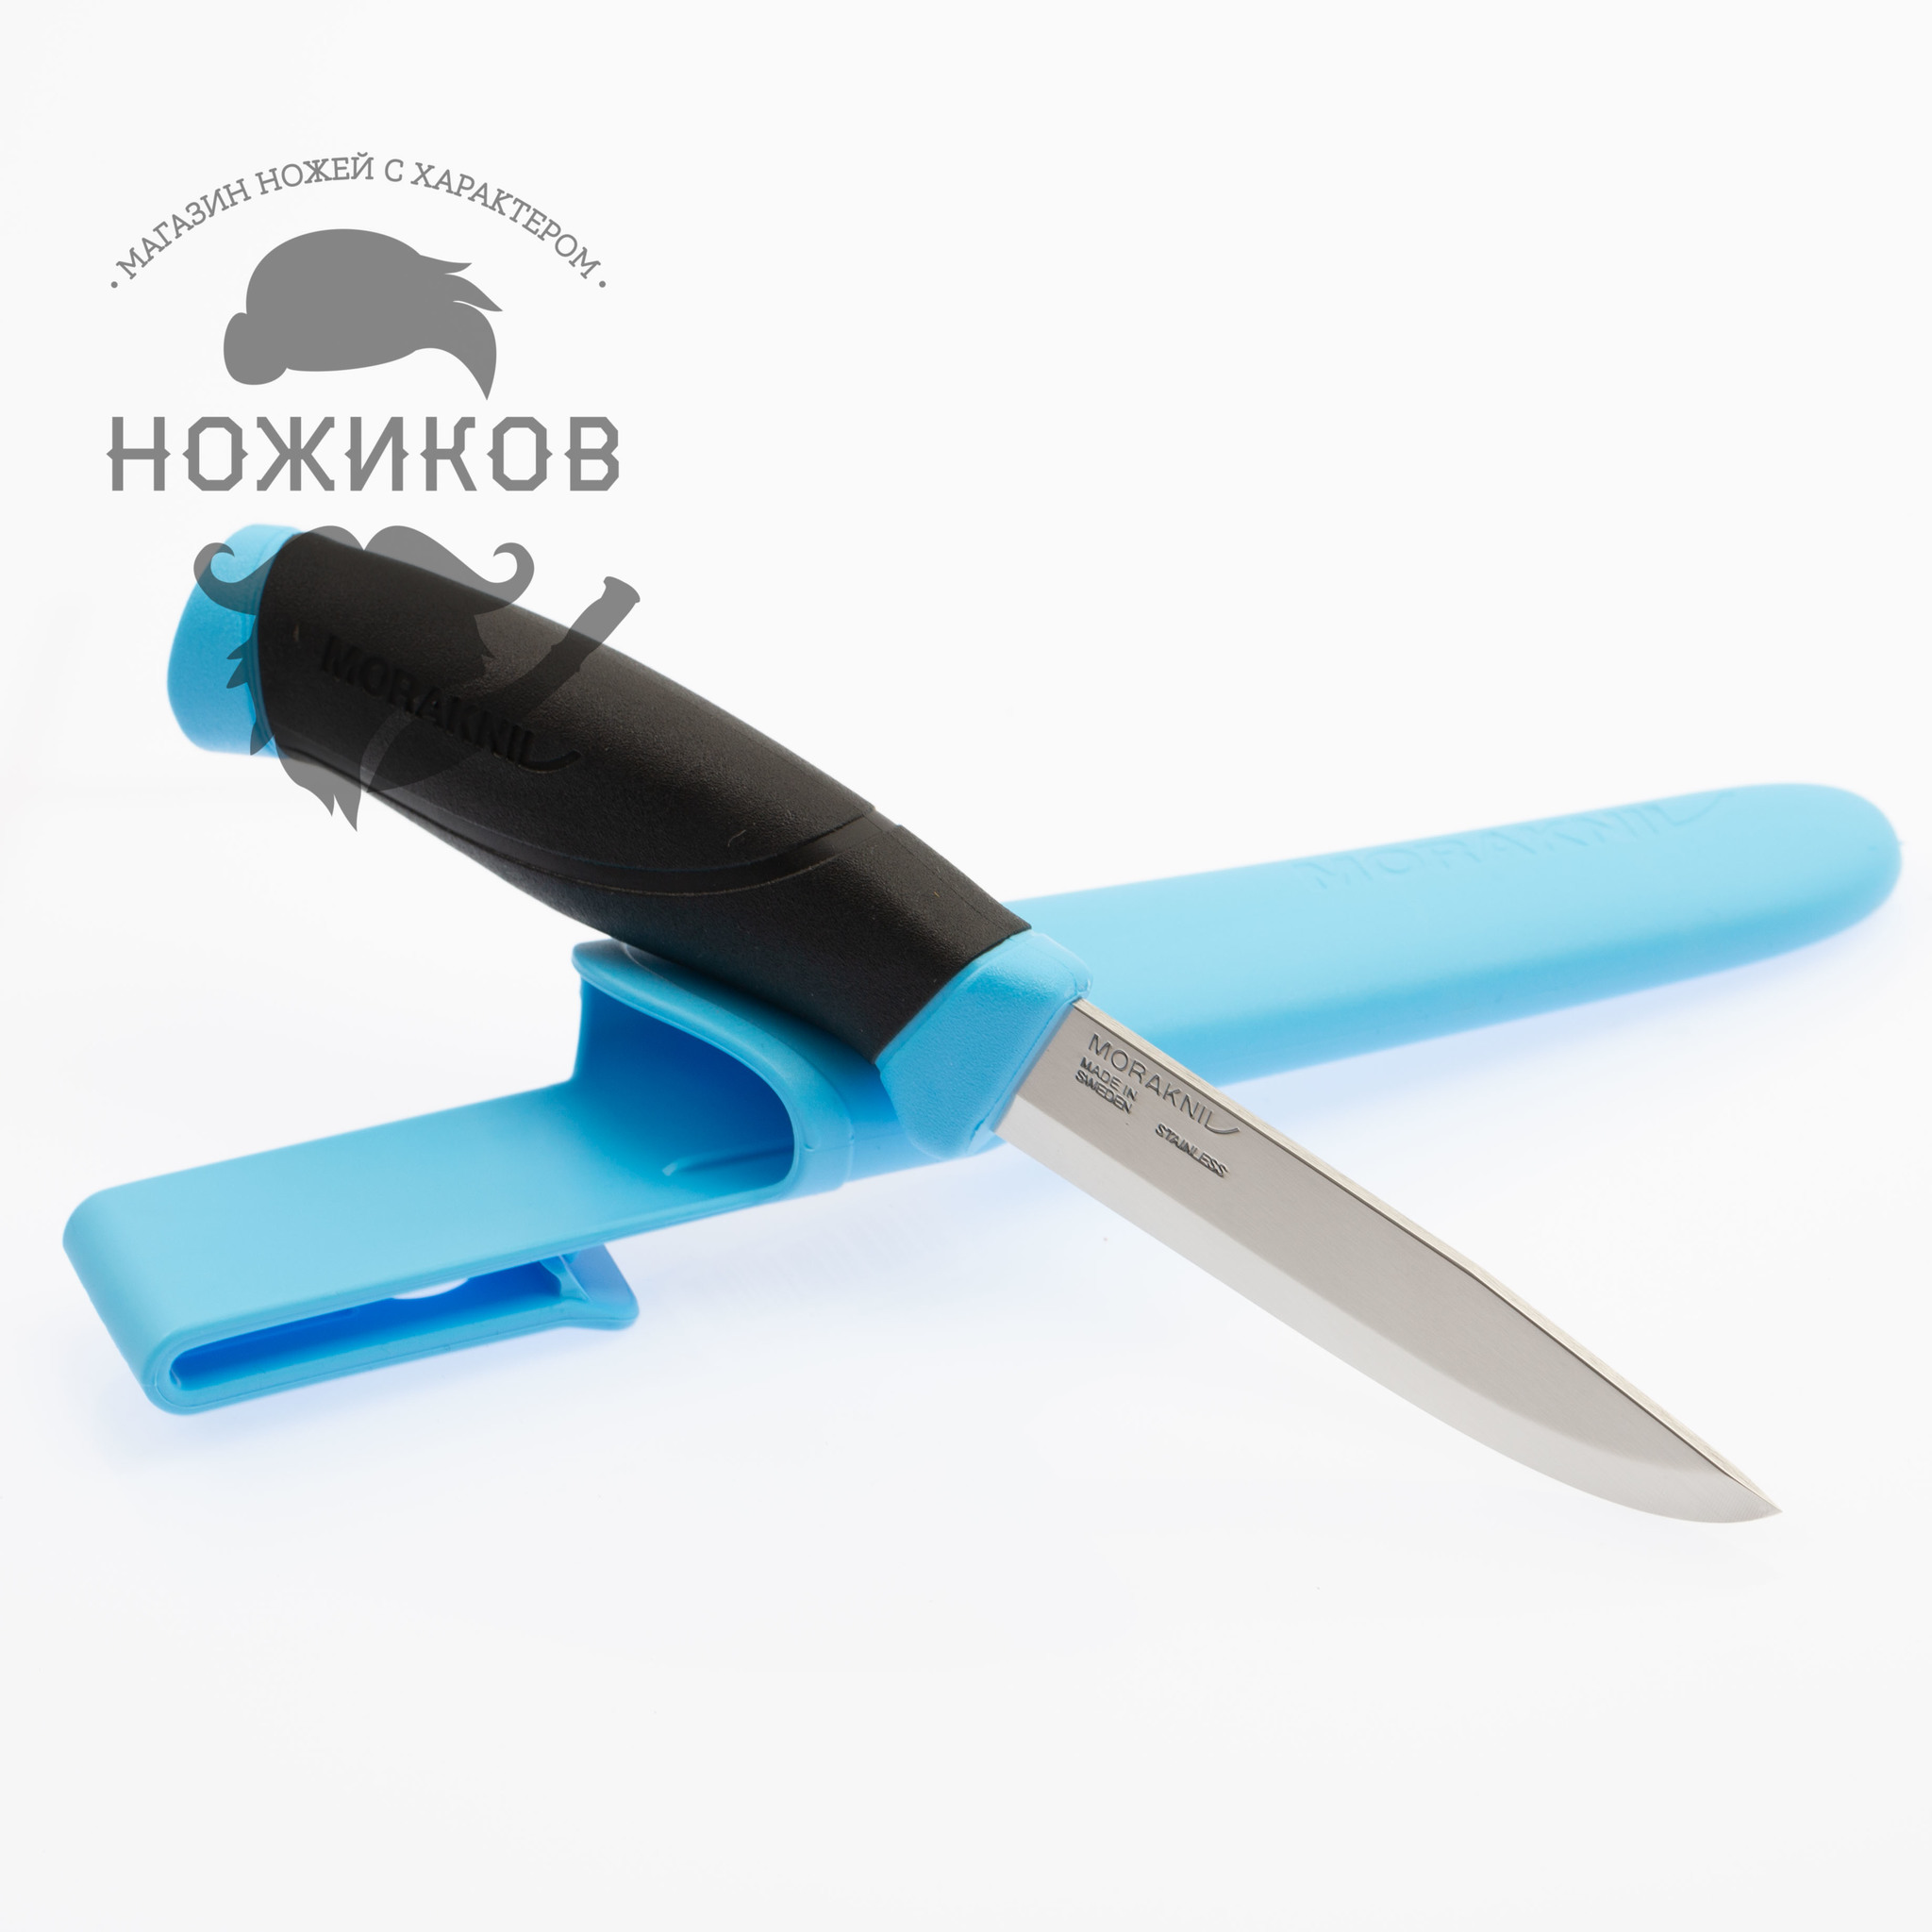 Нож с фиксированным лезвием Morakniv Companion Blue, сталь Sandvik 12С27, рукоять пластик/резина, голубой - фото 2